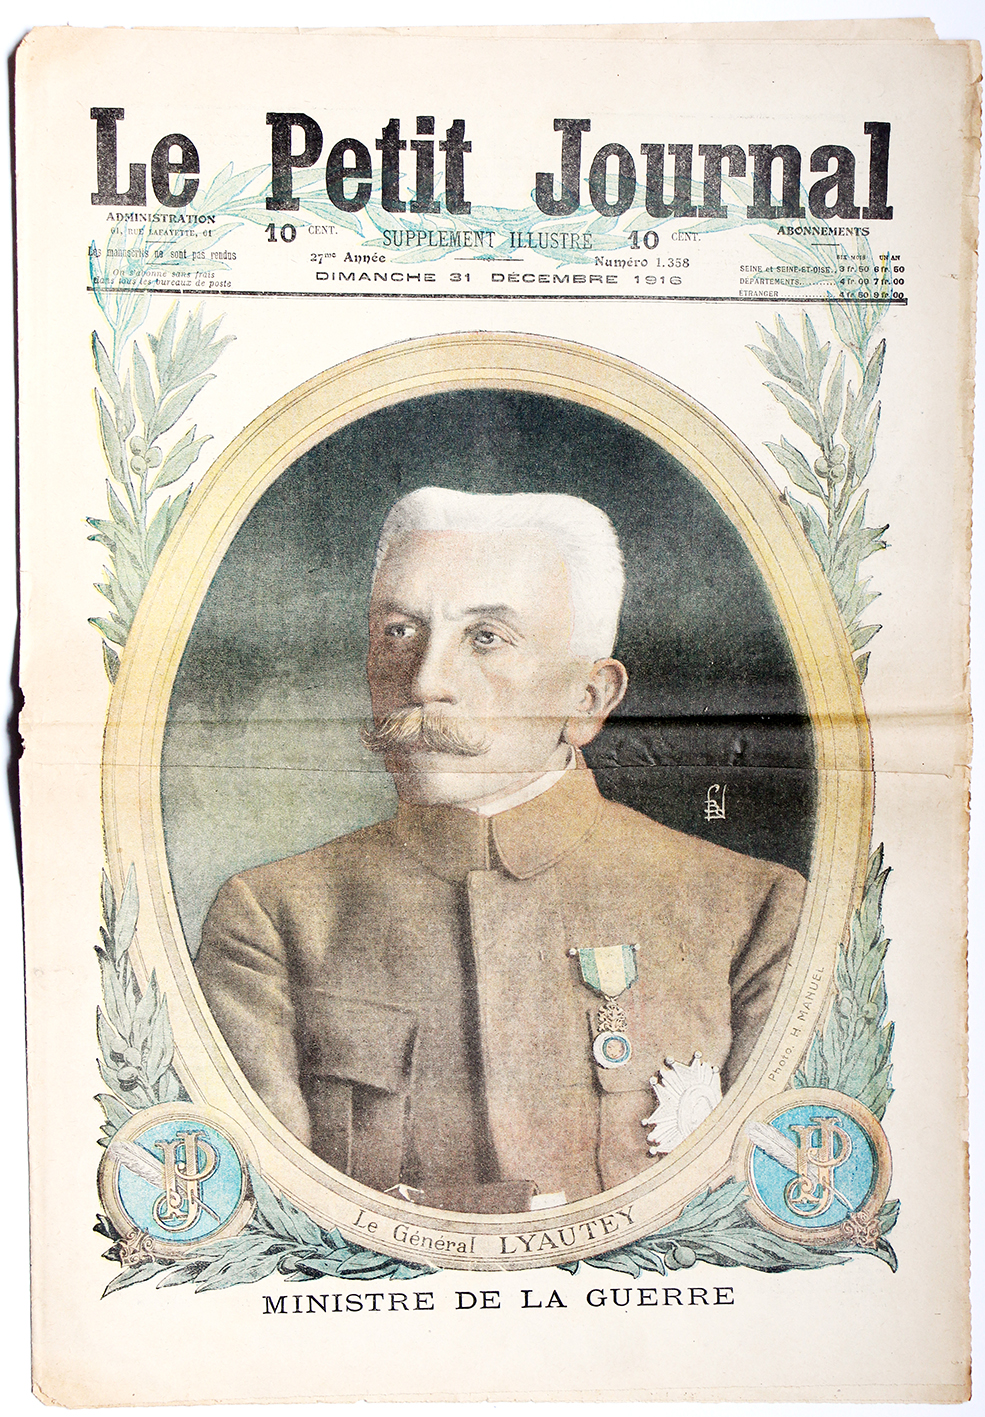 Le petit journal - supplément illustré - 31 décembre 1916 - Lyautey - Ministre de la guerre